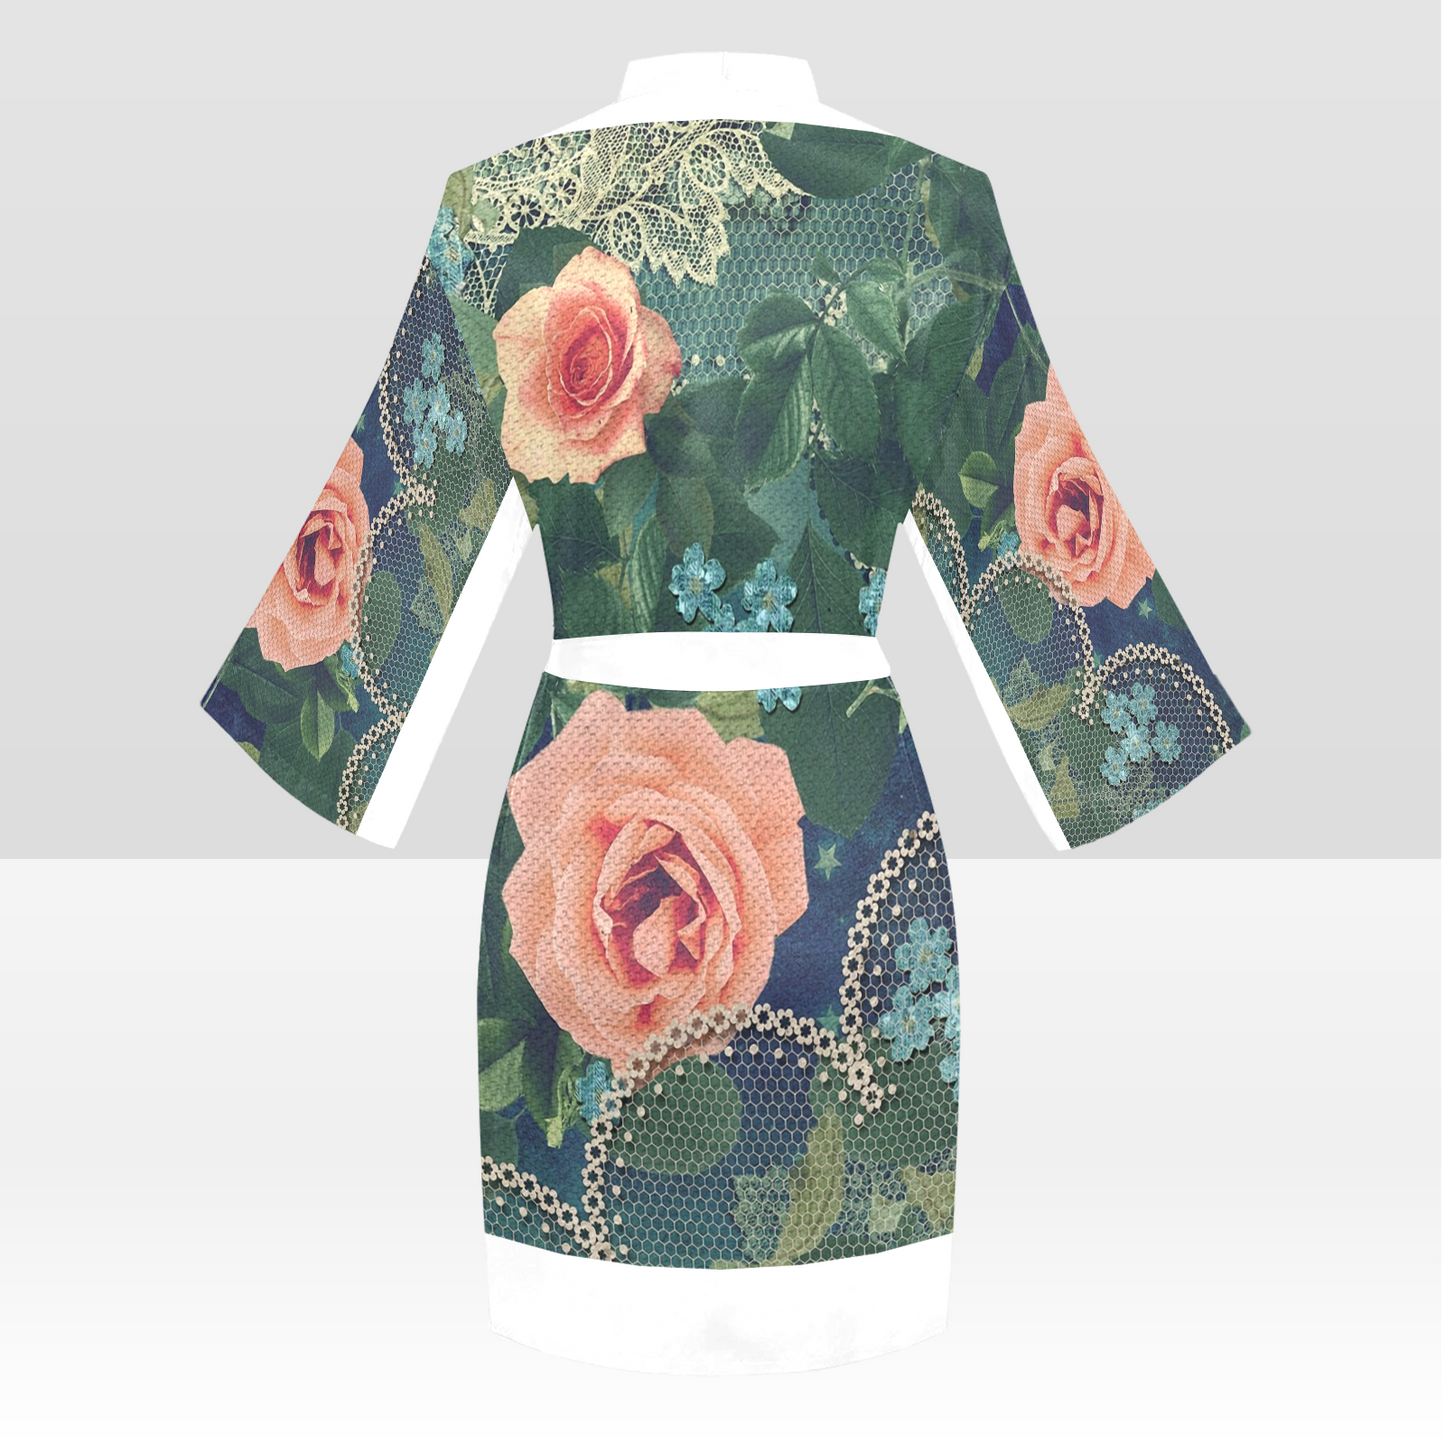 Victorian Lace Kimono Robe, Black or White Trim, Sizes XS to 2XL, Design 01